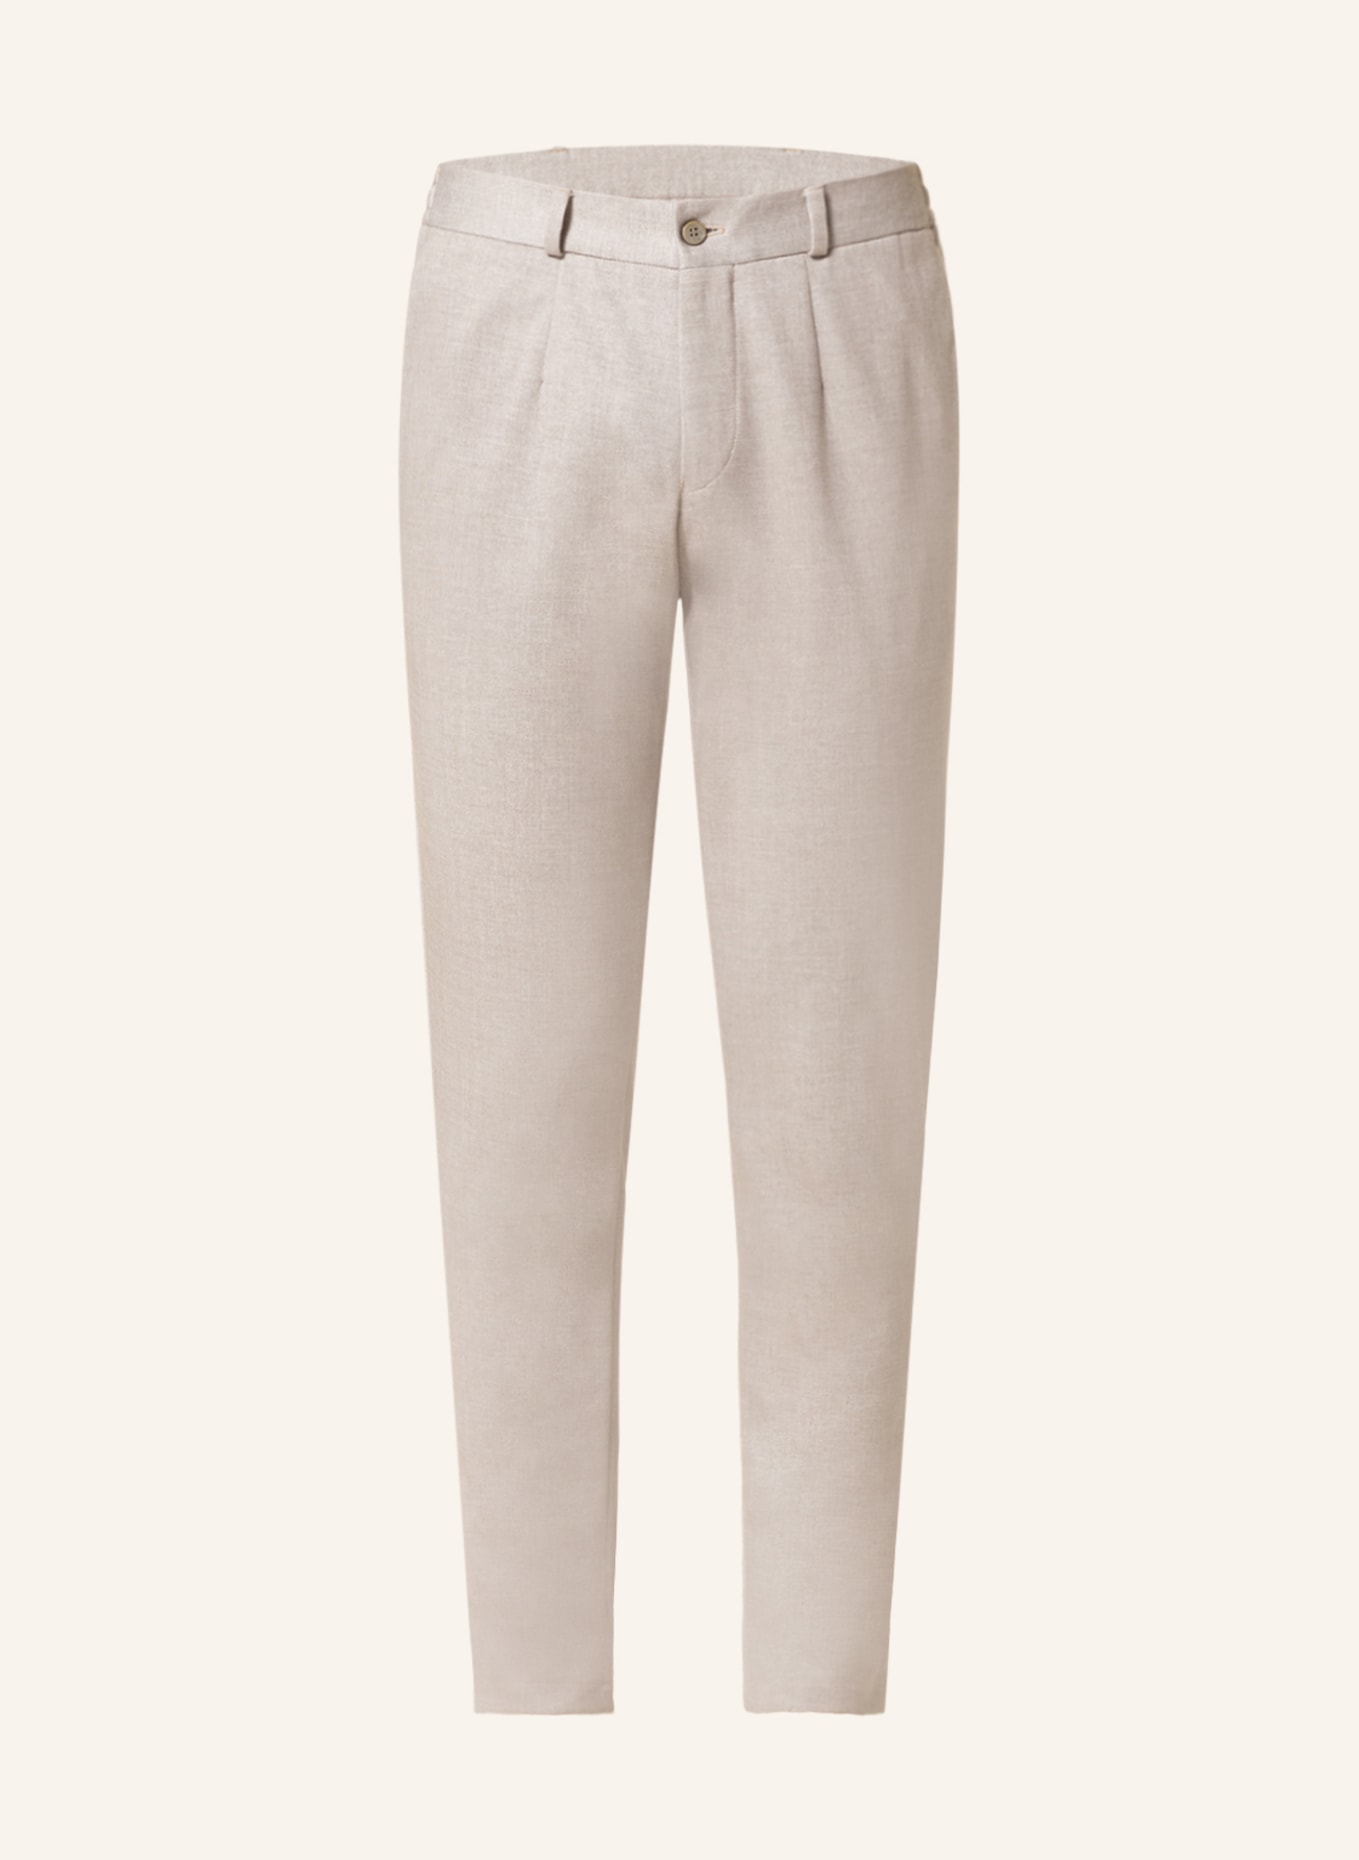 PAUL Suit trousers extra slim fit, Color: BEIGE (Image 1)